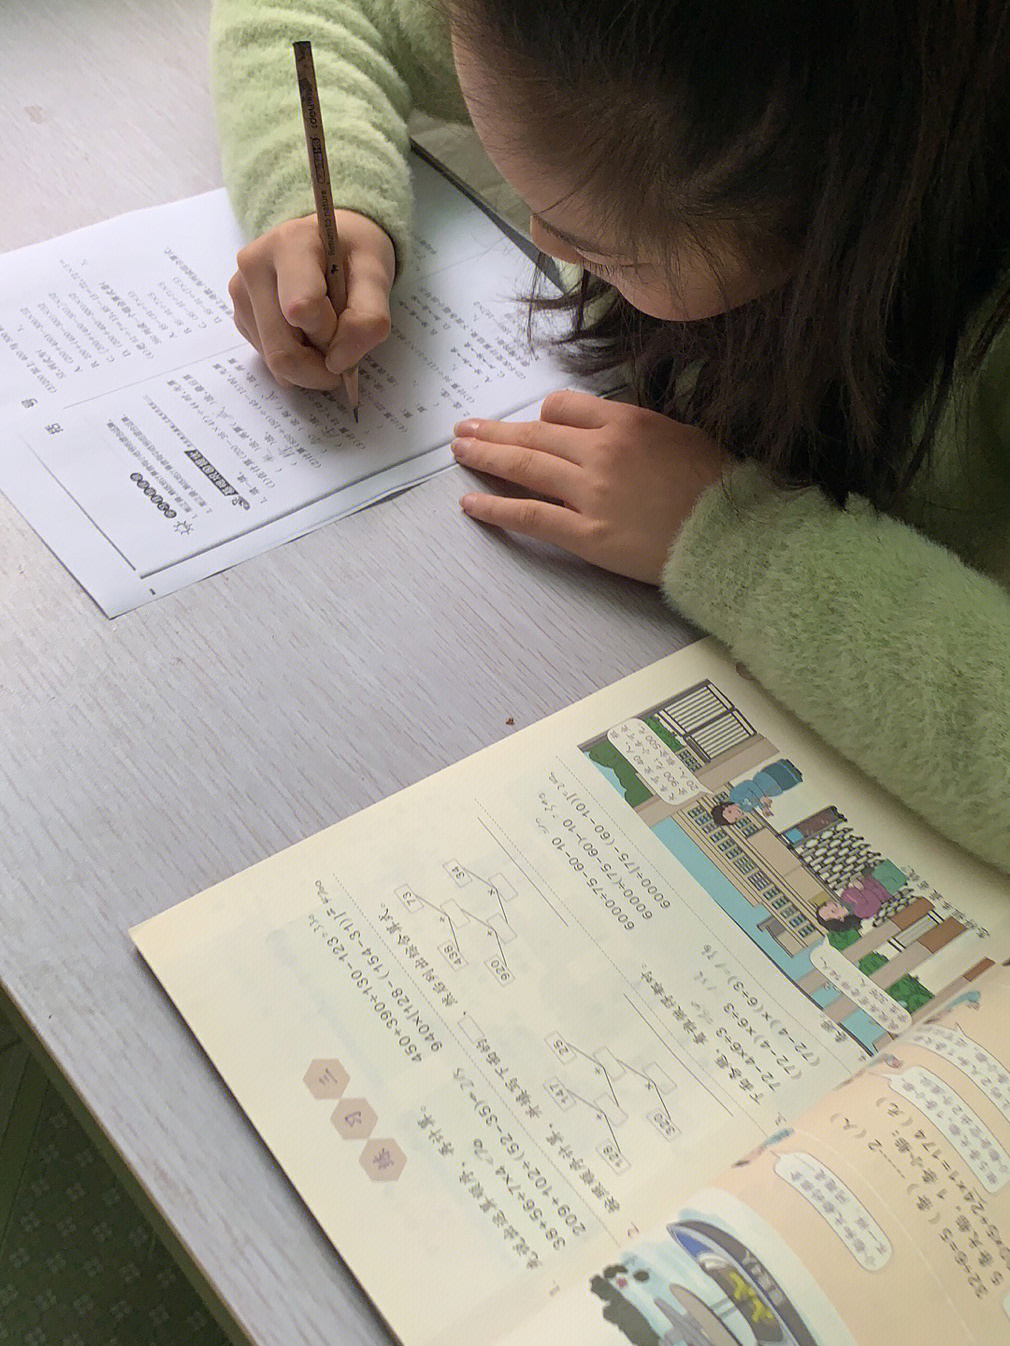 四年级的李紫雯正在抓紧时间赶征文呢,一手漂亮的字,真好看!